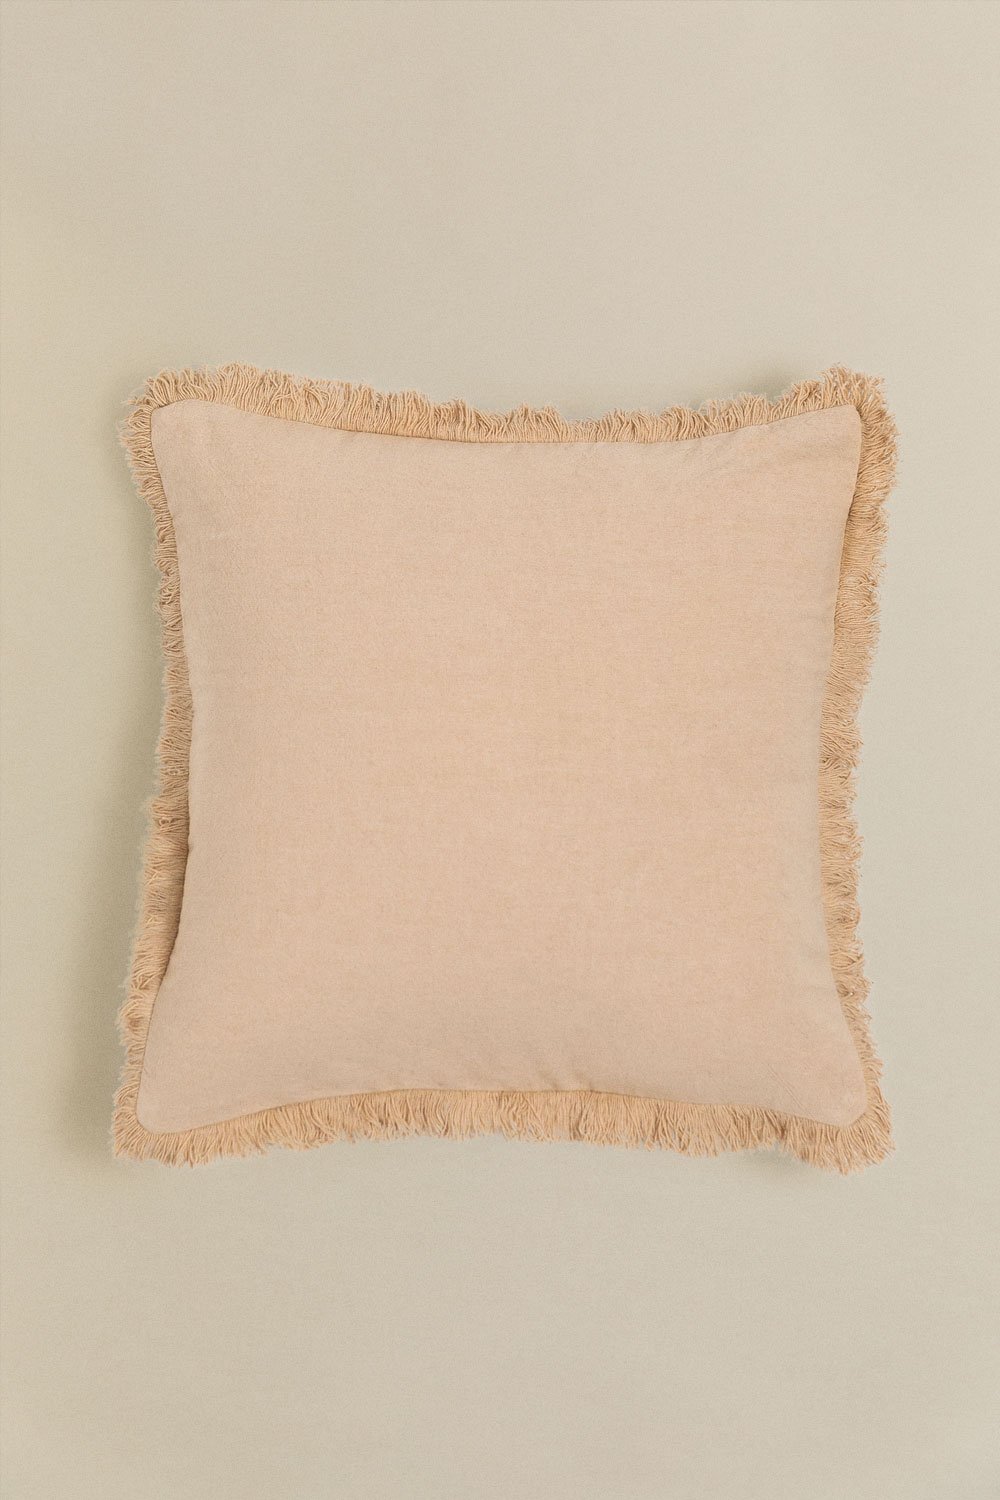 Kwadratowa poduszka bawełniana (40x40 cm) Brigui, obrazek w galerii 1